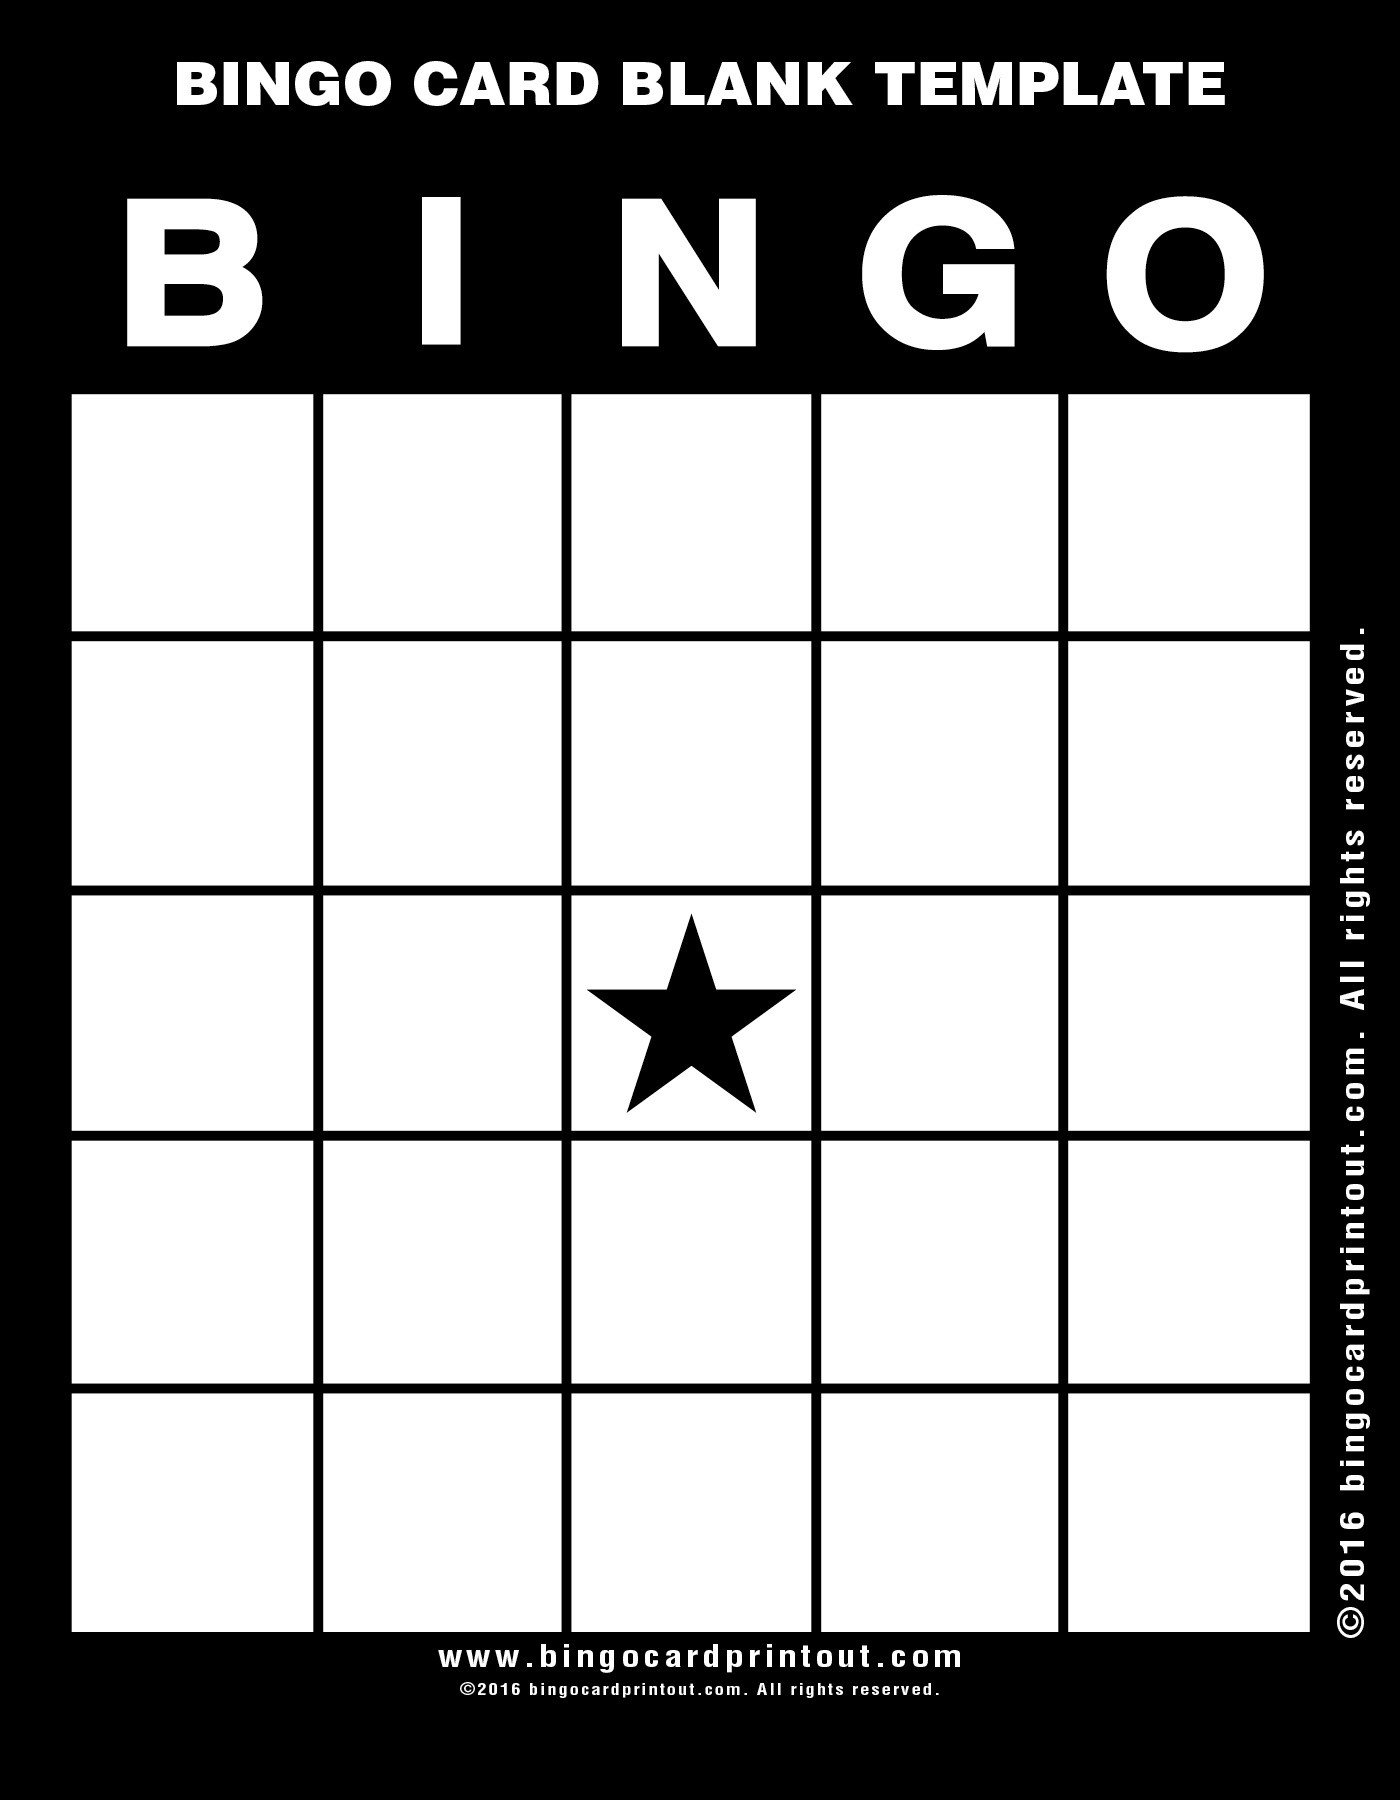 Bingo Card Blank Template BingoCardPrintout